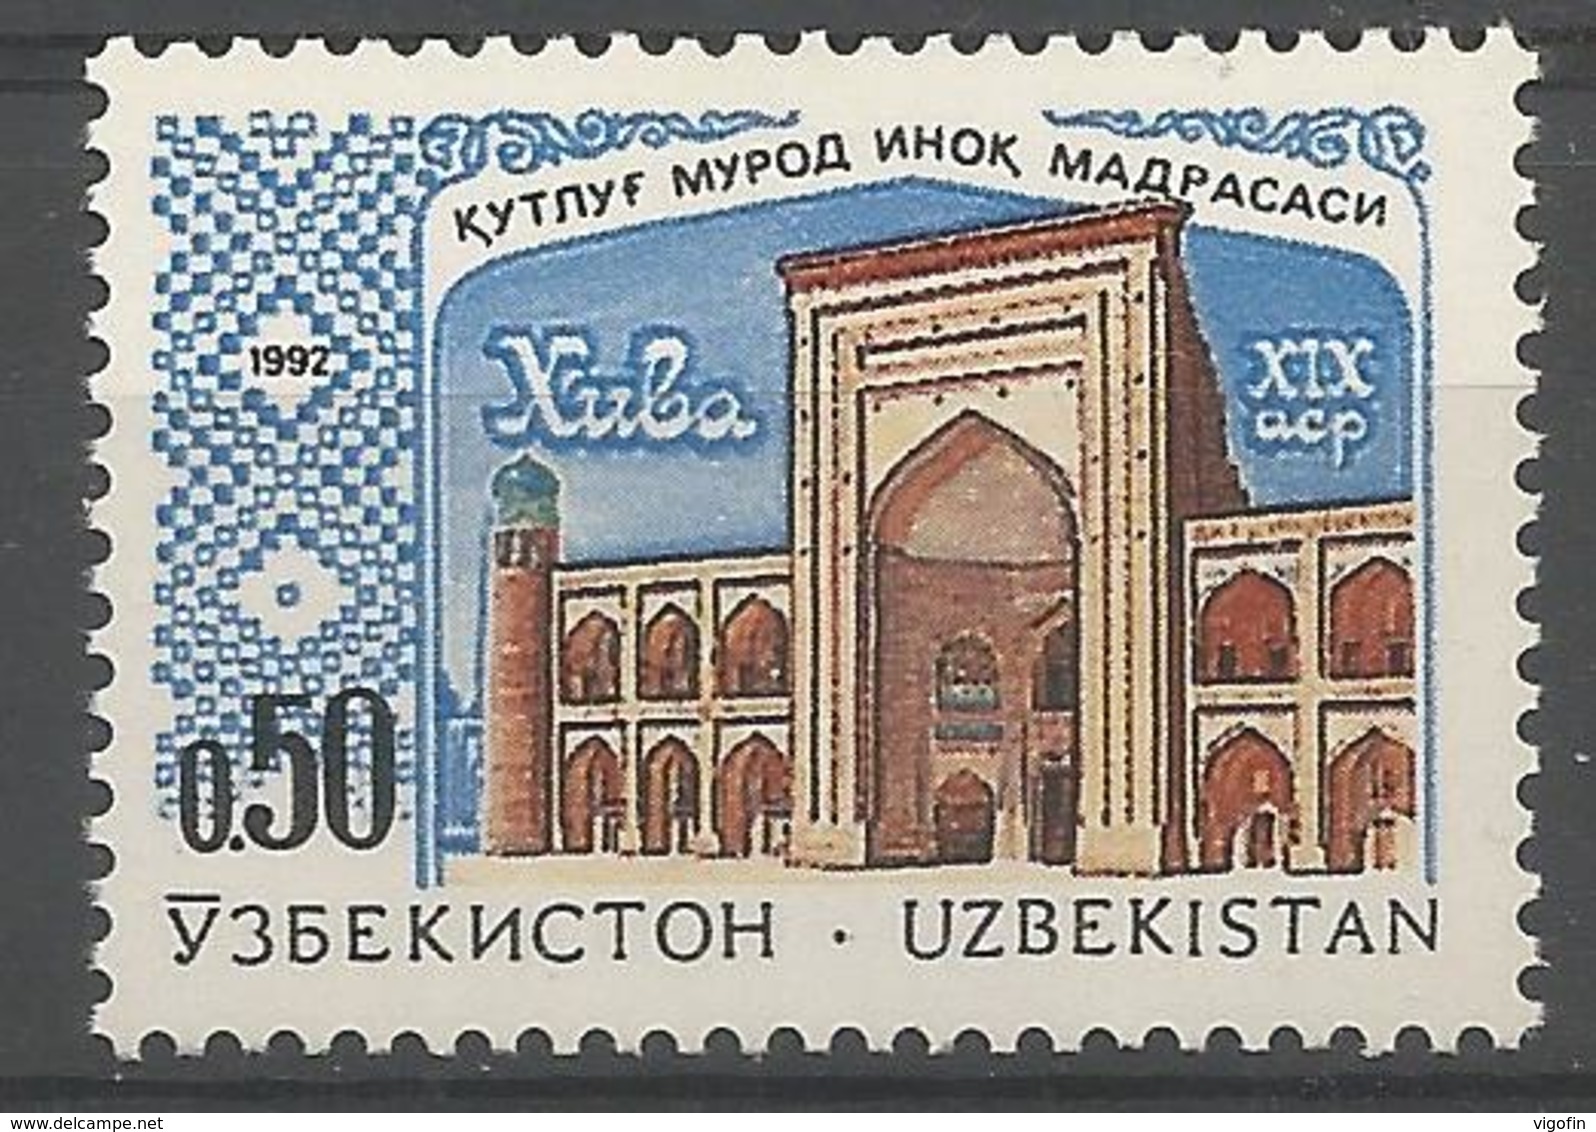 UZ 1992- MOSQUE, UZBEKISTAN, 1 X 1v, MNH - Usbekistan